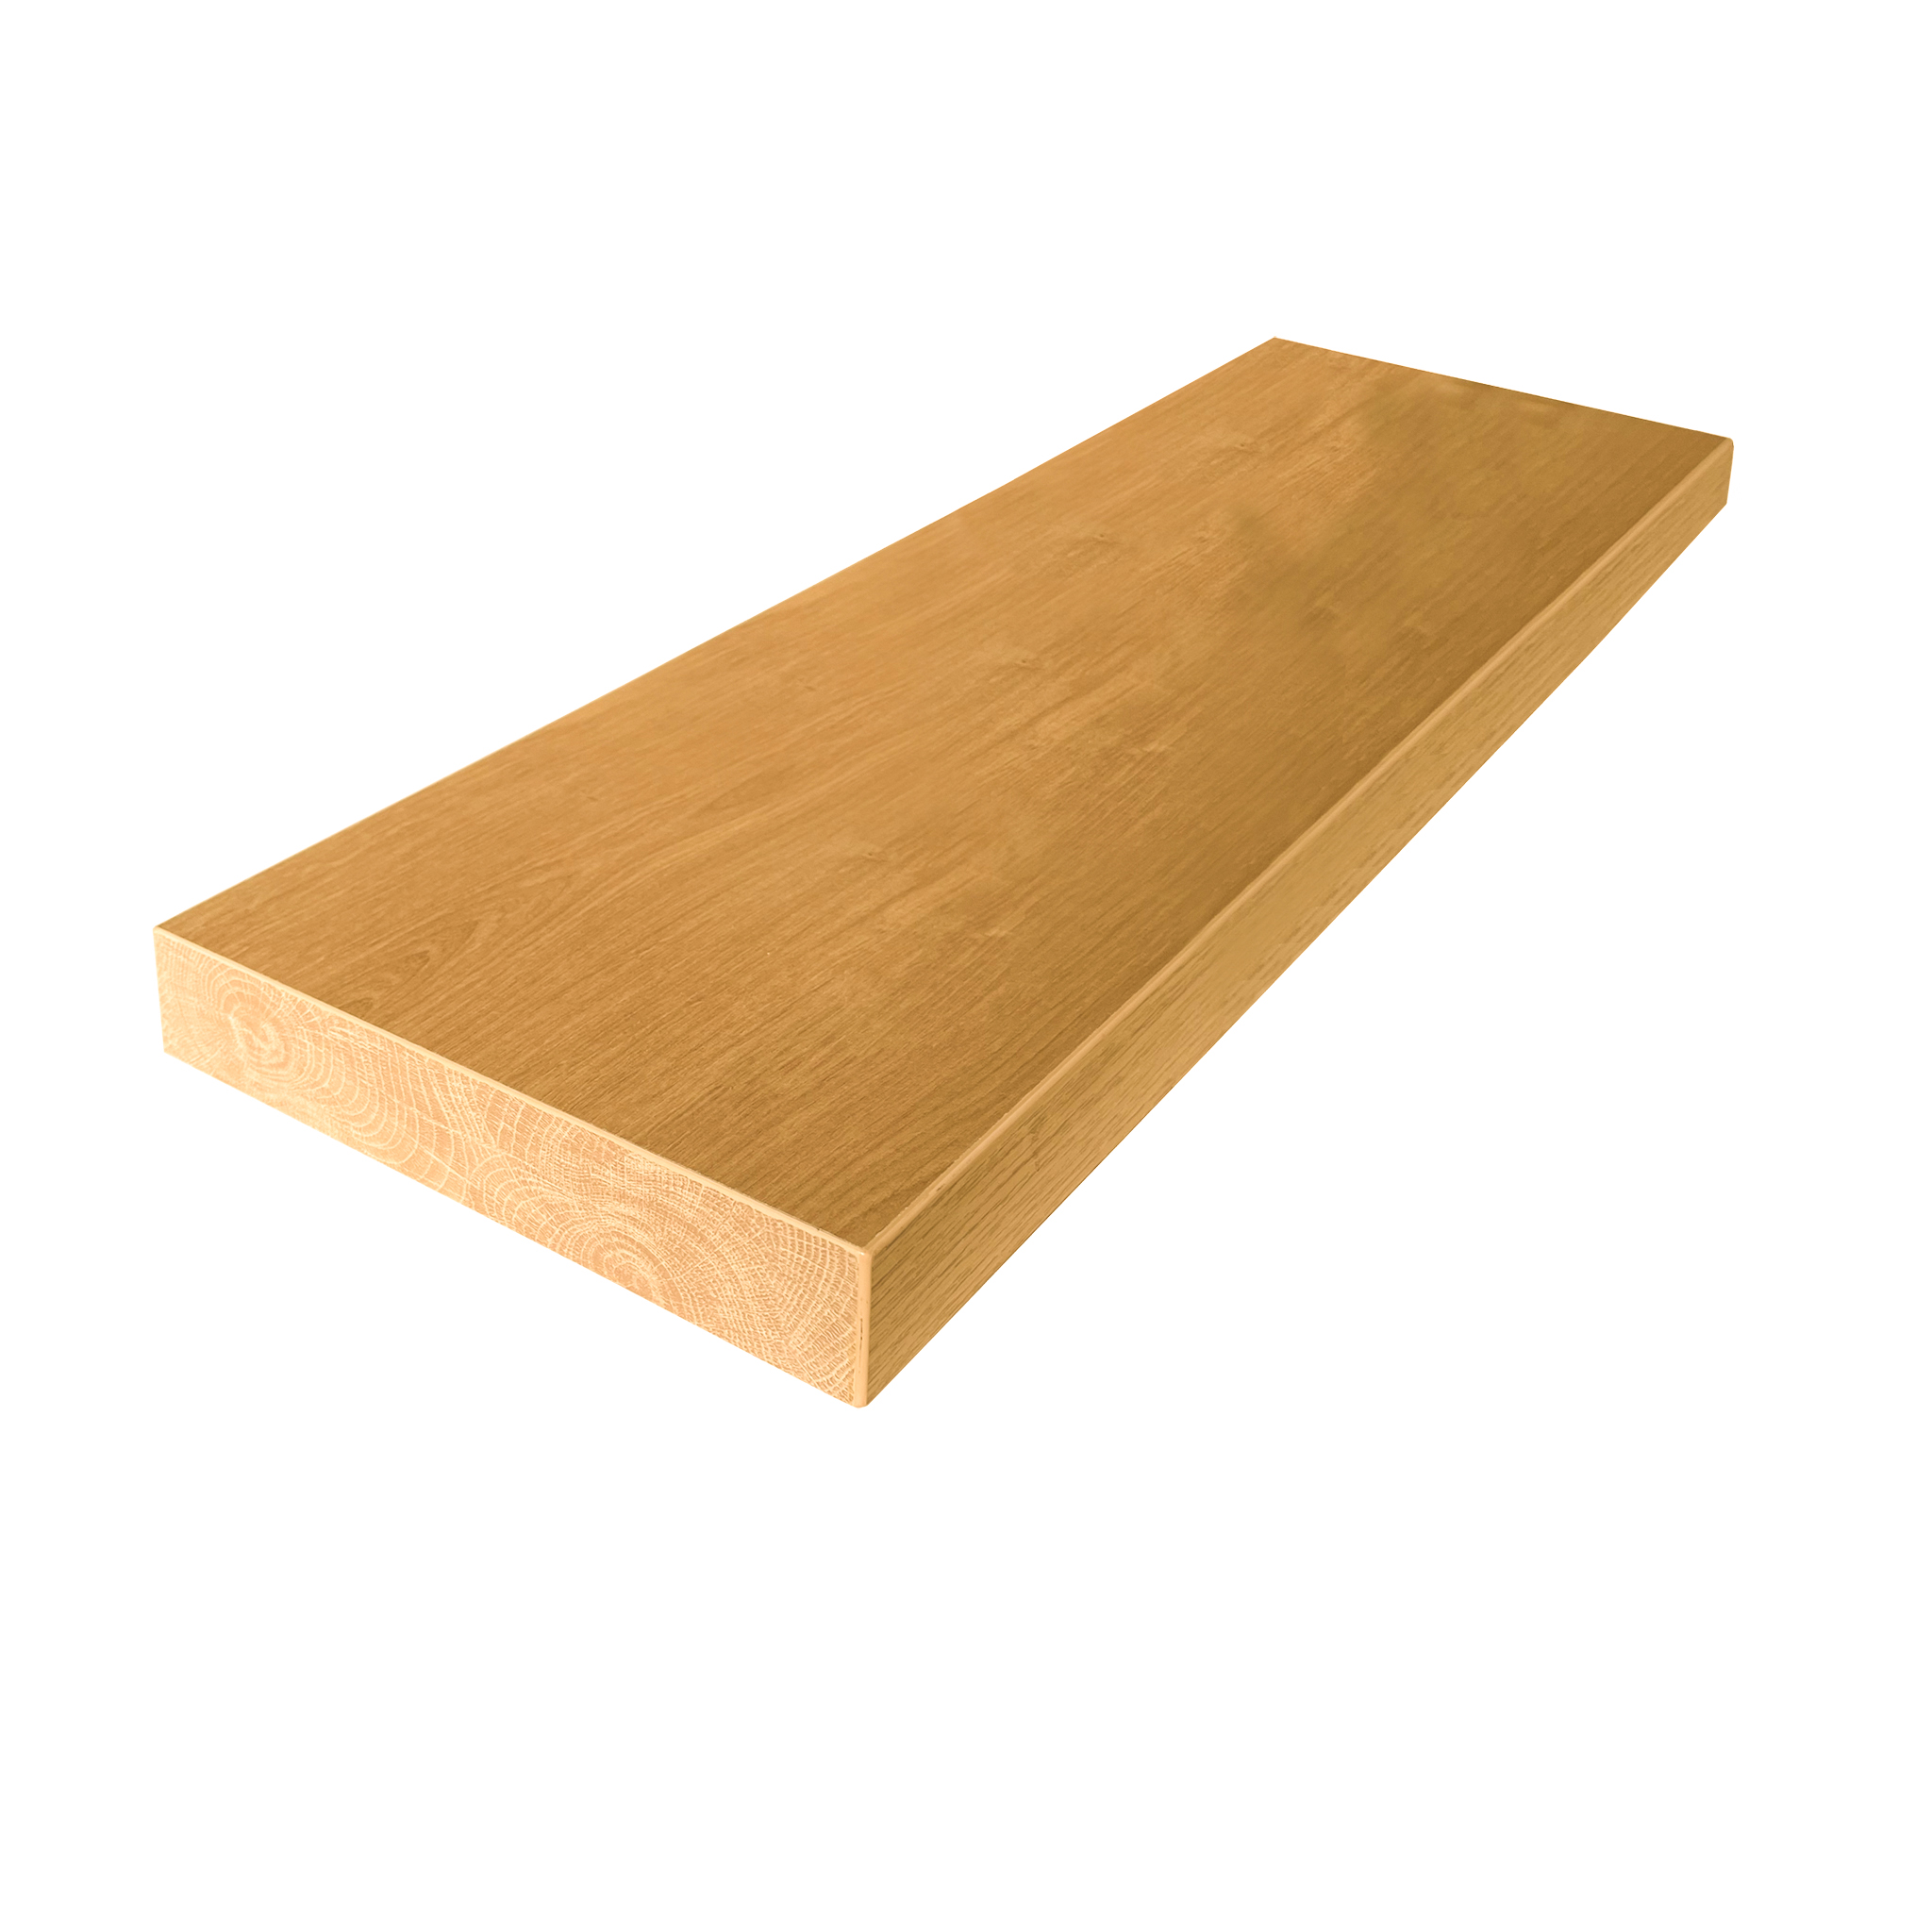 Solid oak stair tread 800 mm